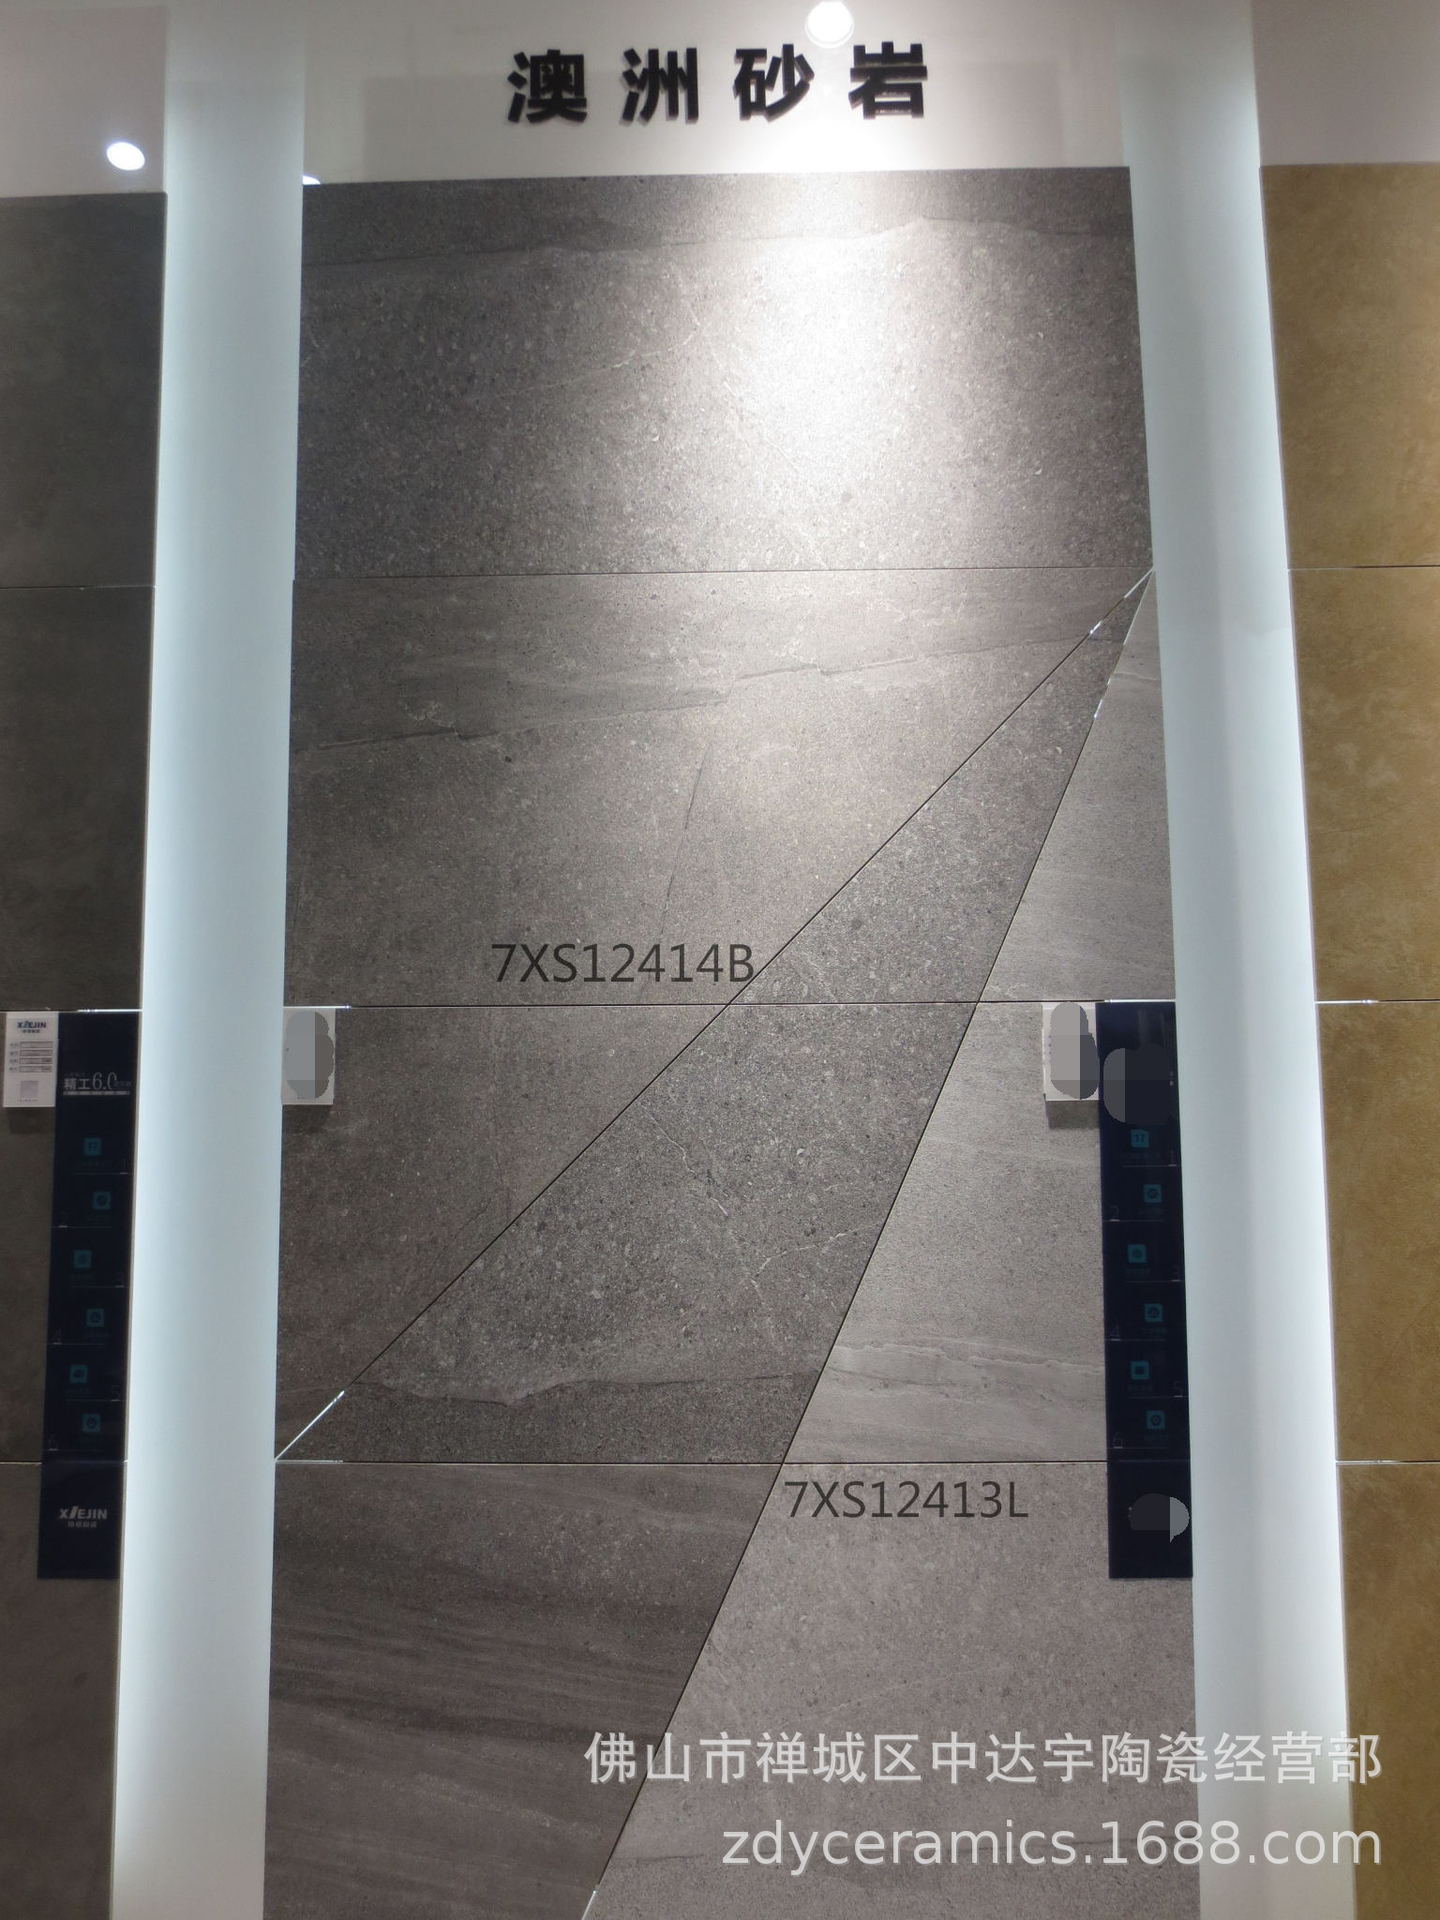 佛山600X1200仿古澳洲砂岩水磨石瓷砖一石多面砖客厅卫生间地面砖XJ-单片示例图19